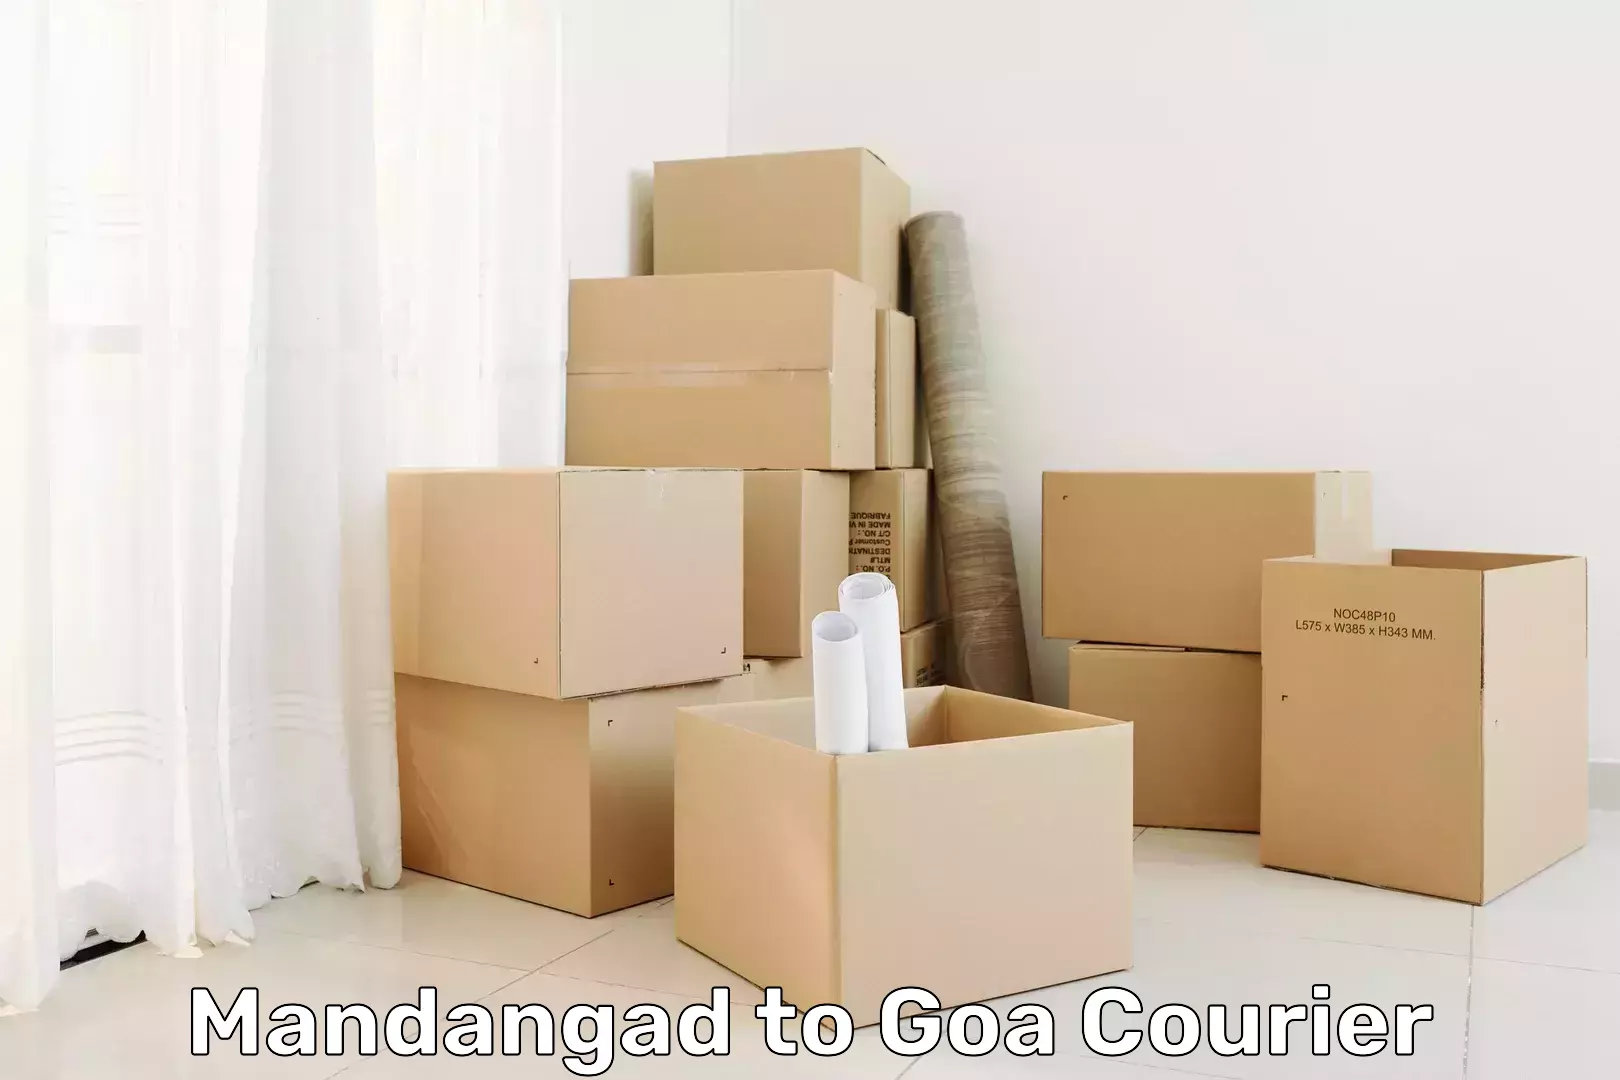 Business courier solutions Mandangad to Vasco da Gama